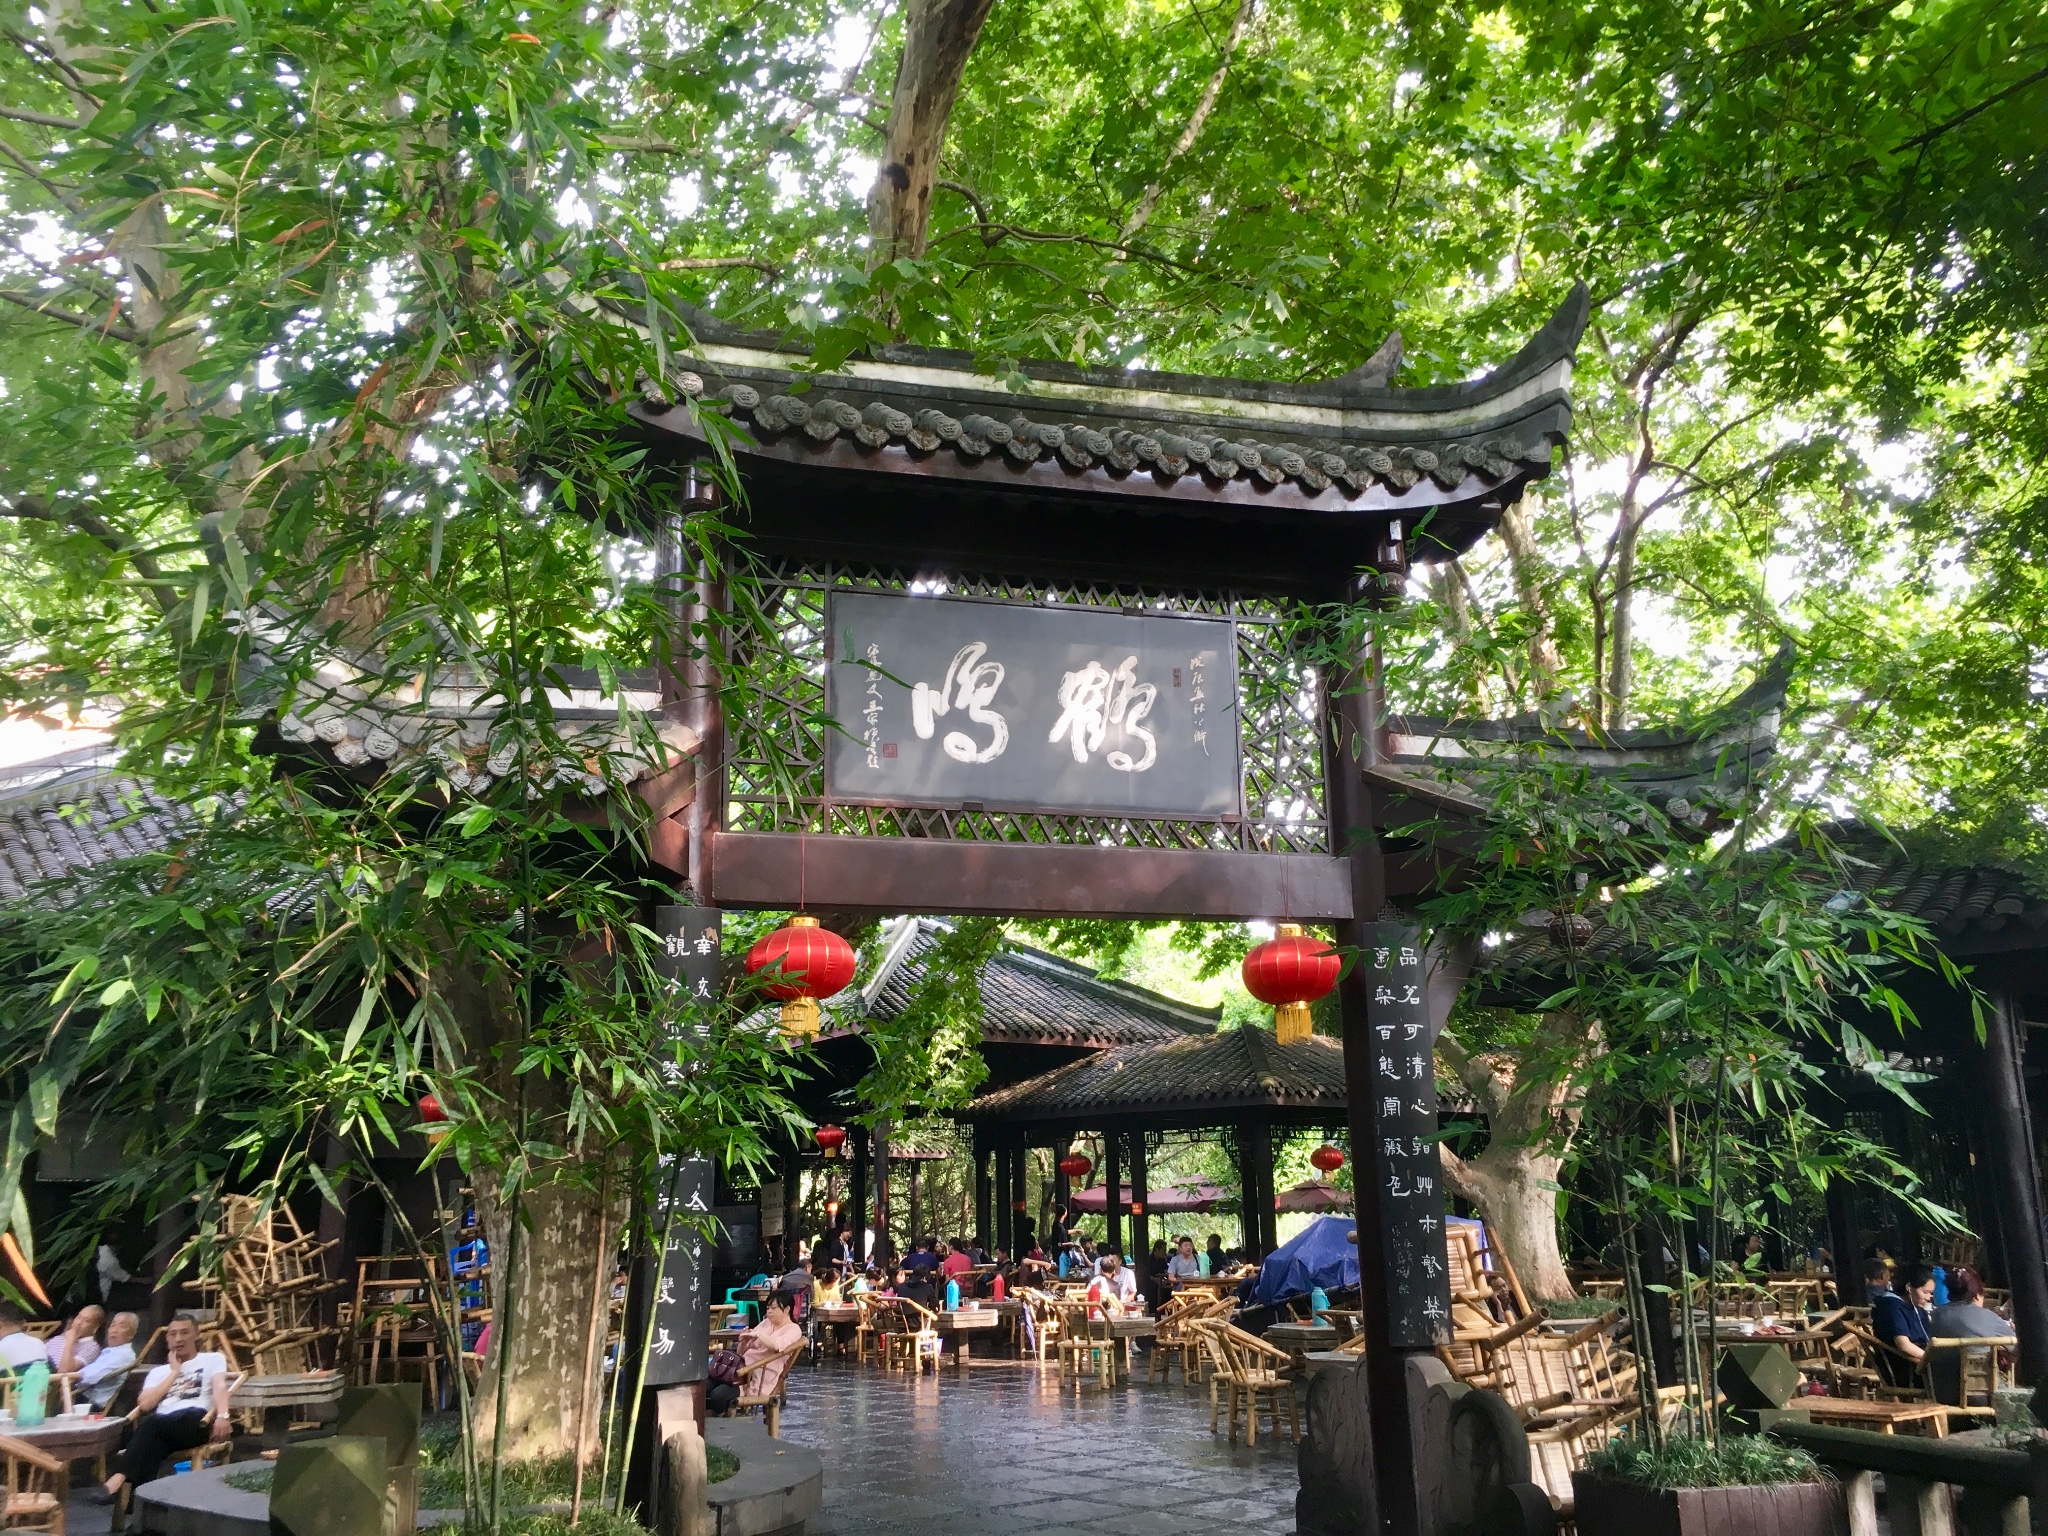 ChengDu People's Park, chengdu tour attractions